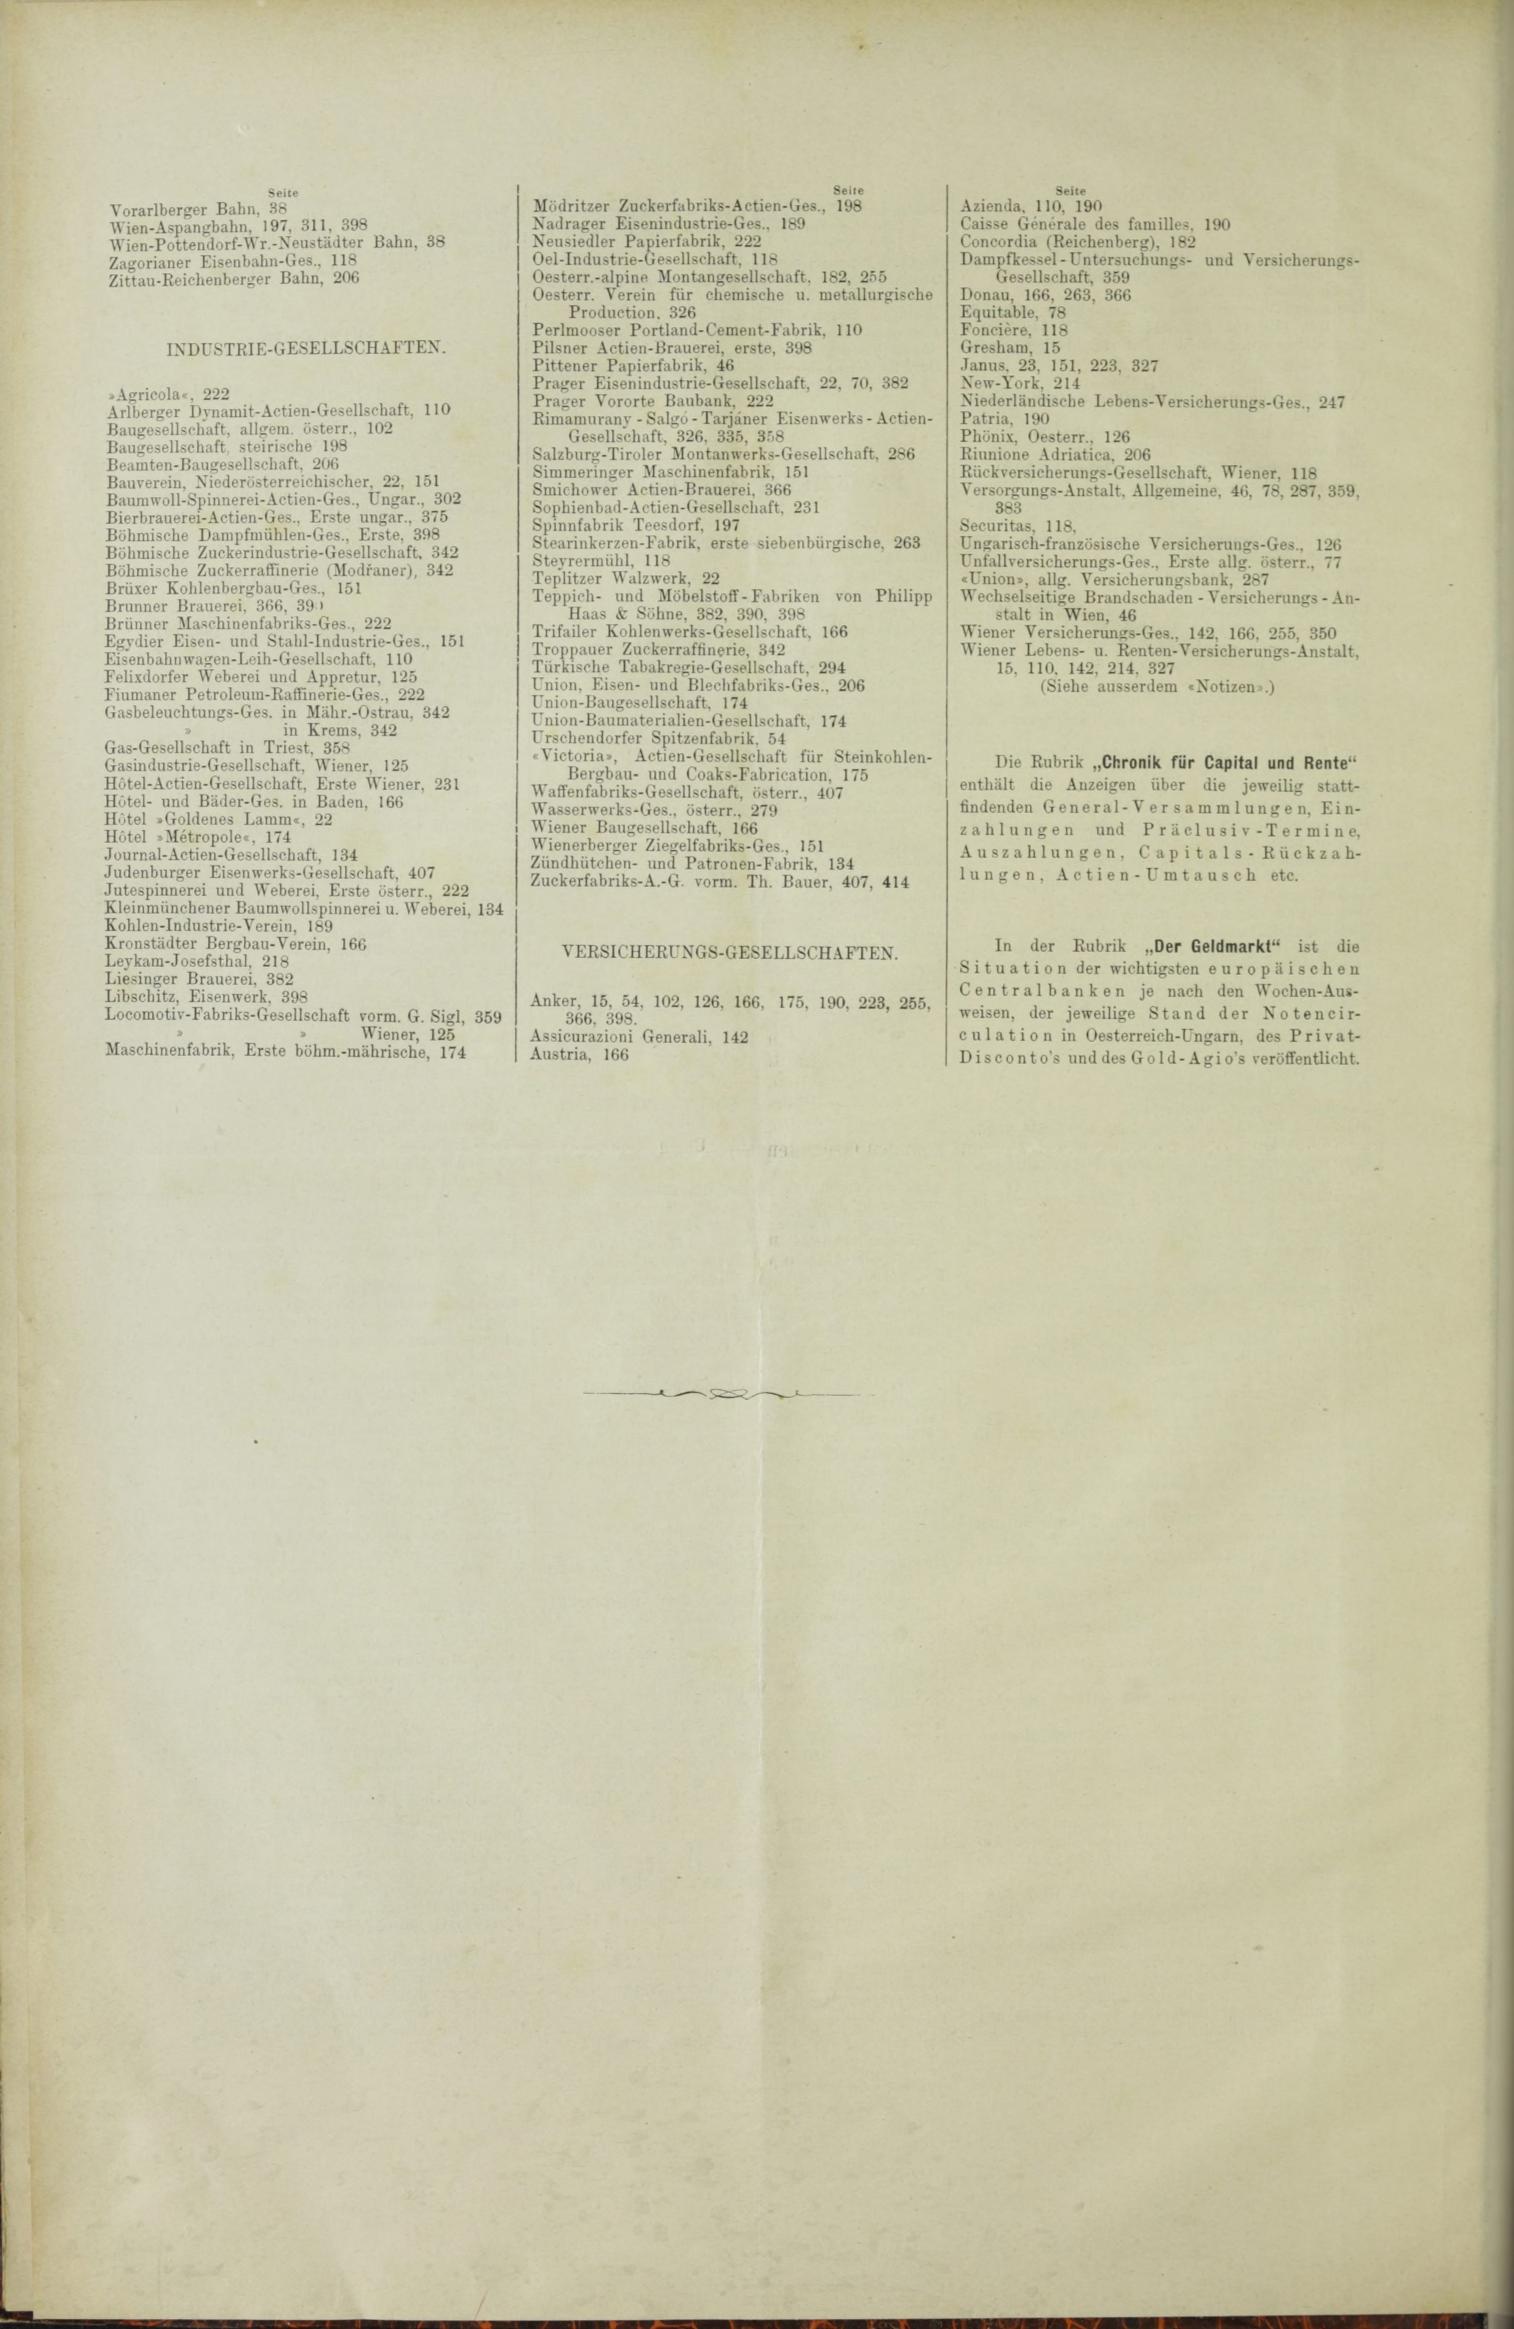 Der Tresor 28.10.1886 - Seite 12